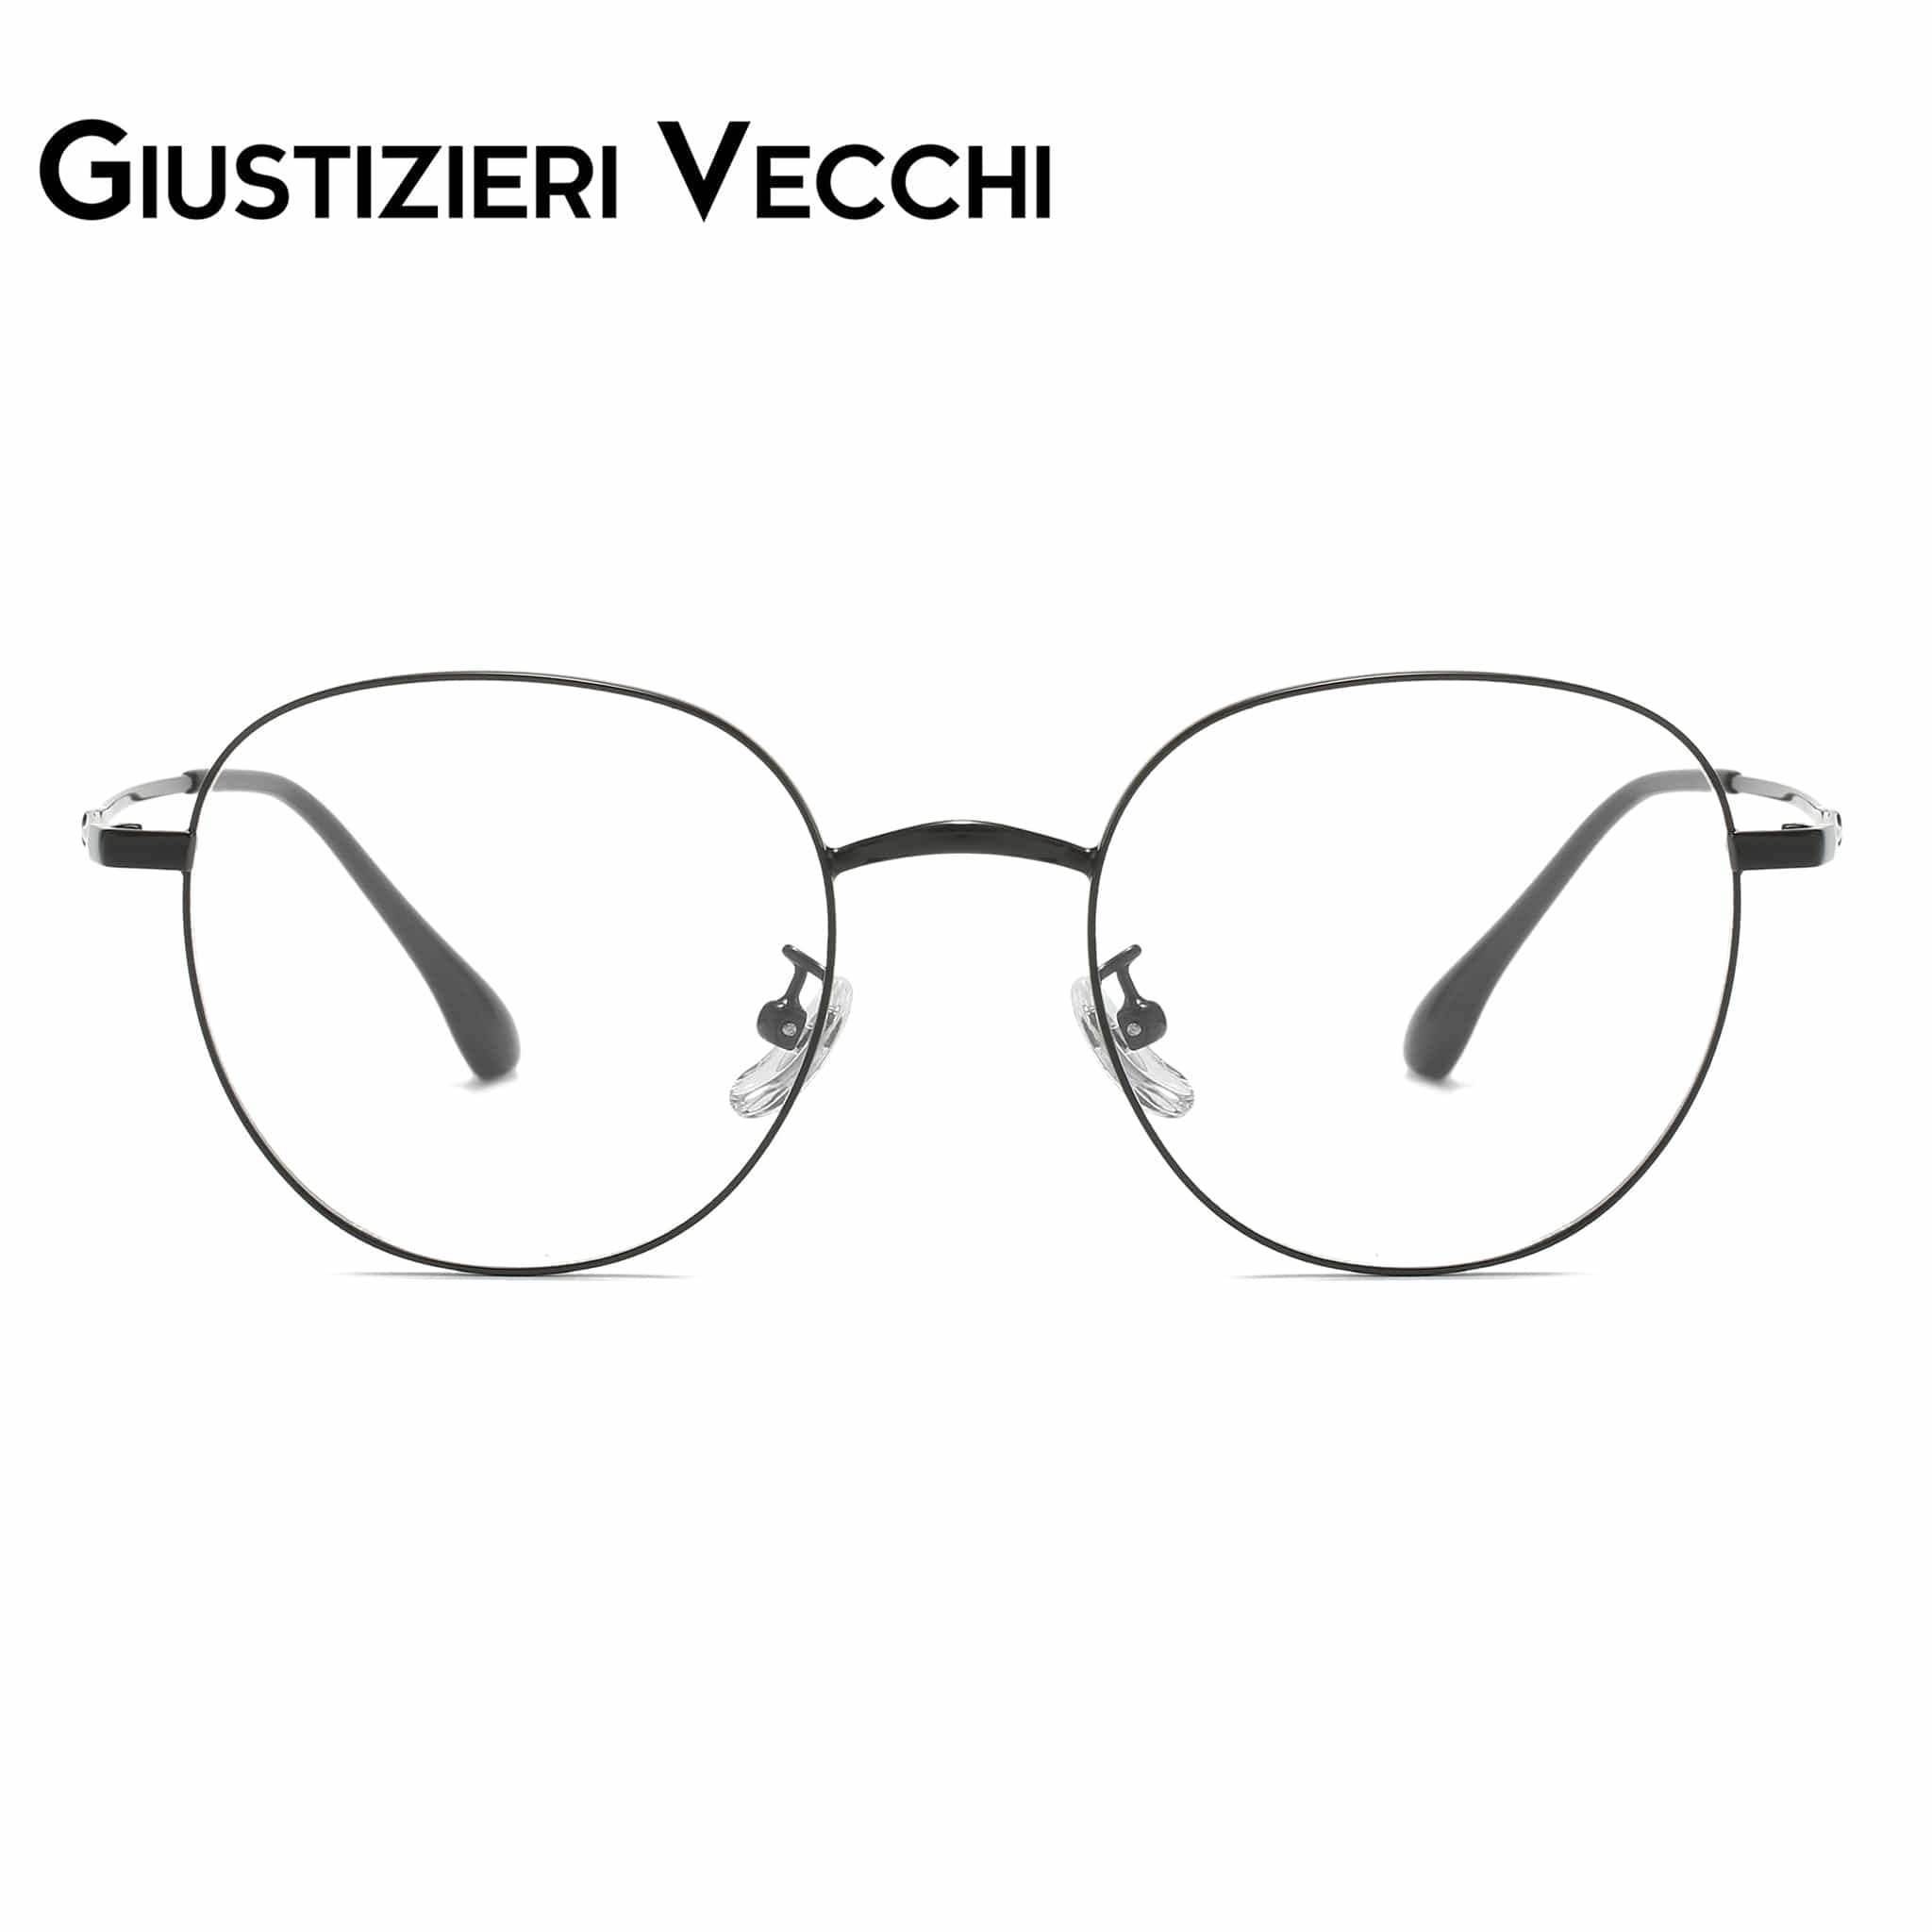 GIUSTIZIERI VECCHI Eyeglasses Small / Black Arctic Chill Uno